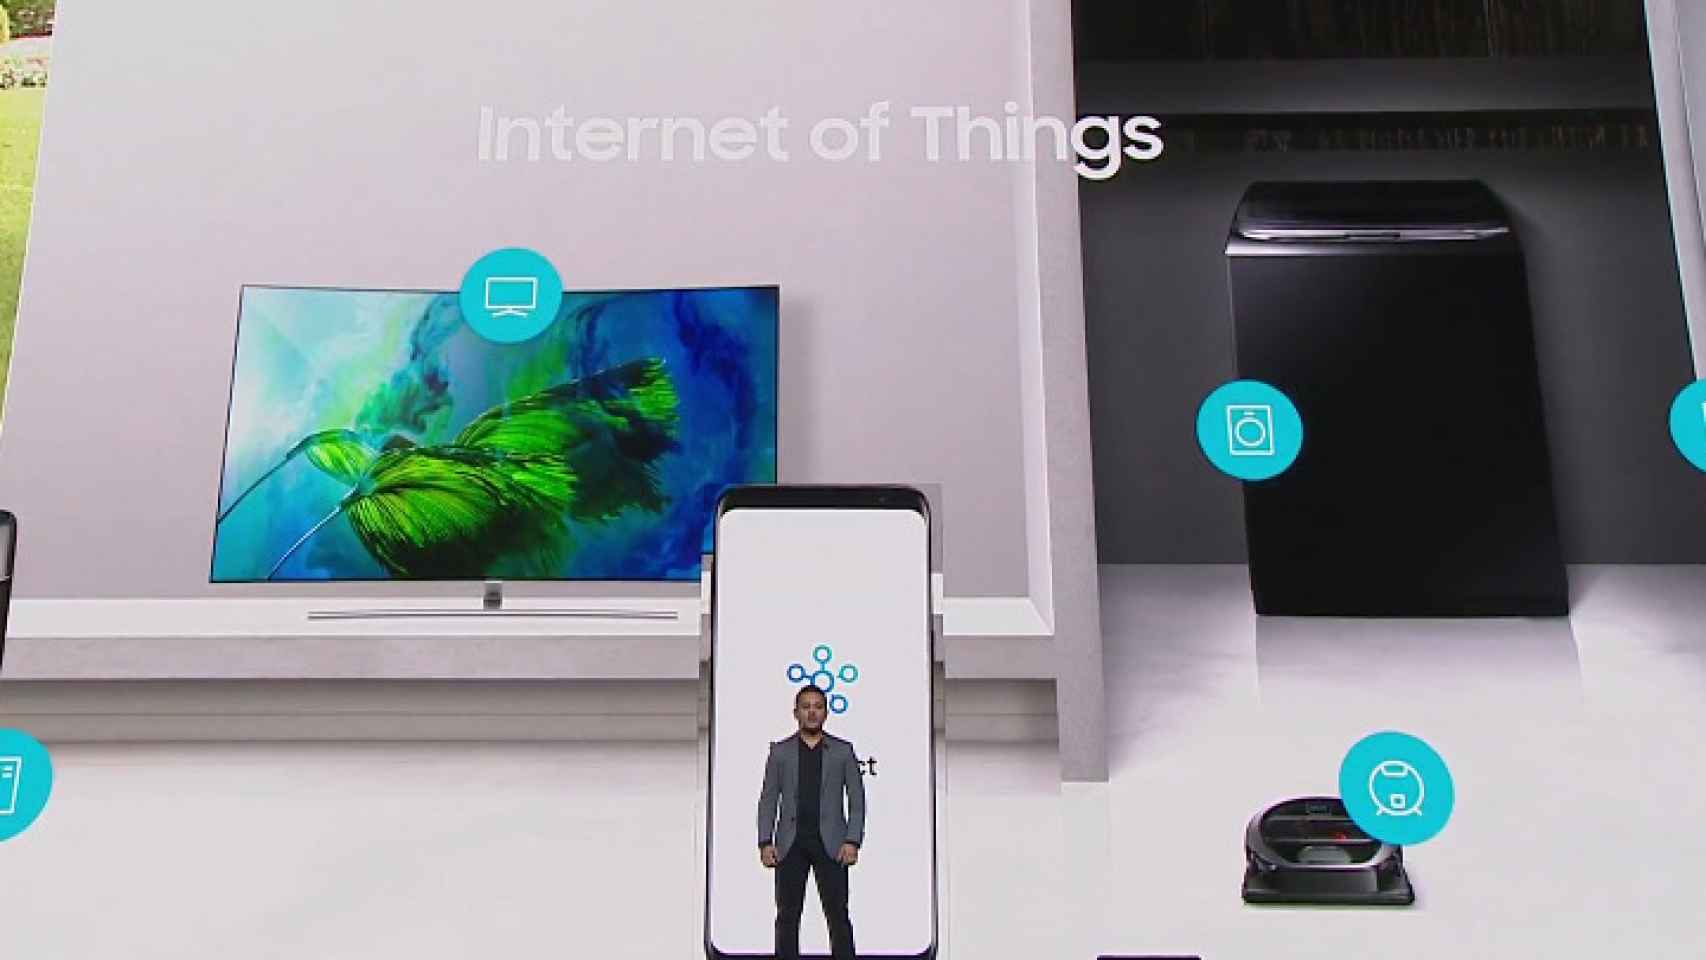 El Samsung Galaxy S8 controlará tus objetos conectados gracias a Samsung Connect